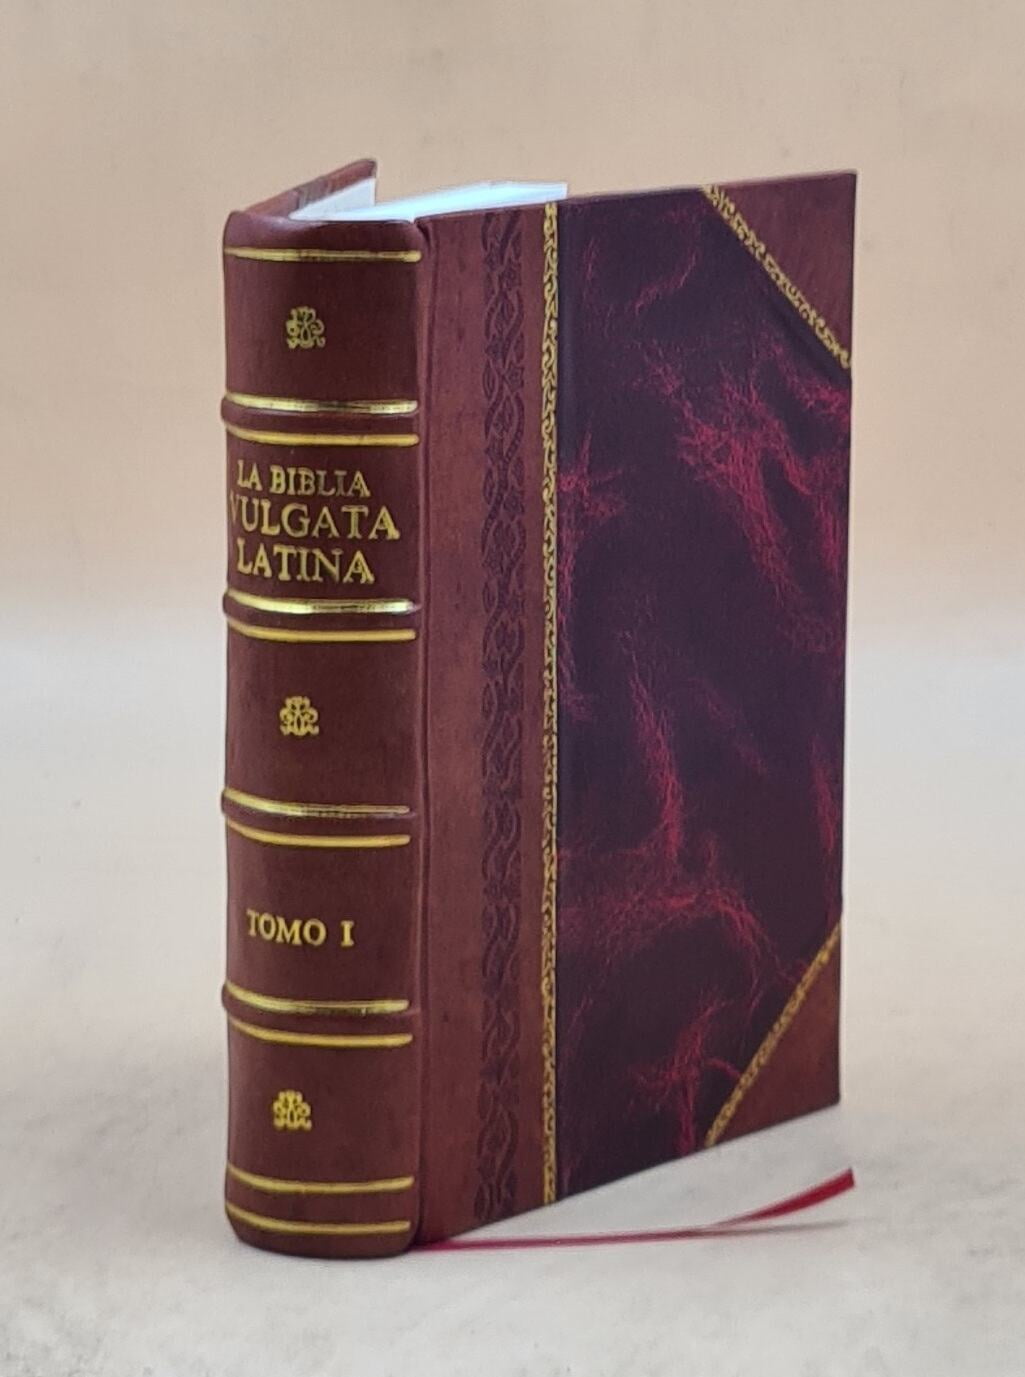  El secreto de la Ley de Atracción: Sendero de sabiduría y poder  (Spanish Edition): 9789876340977: Callegari, Marisa: Libros